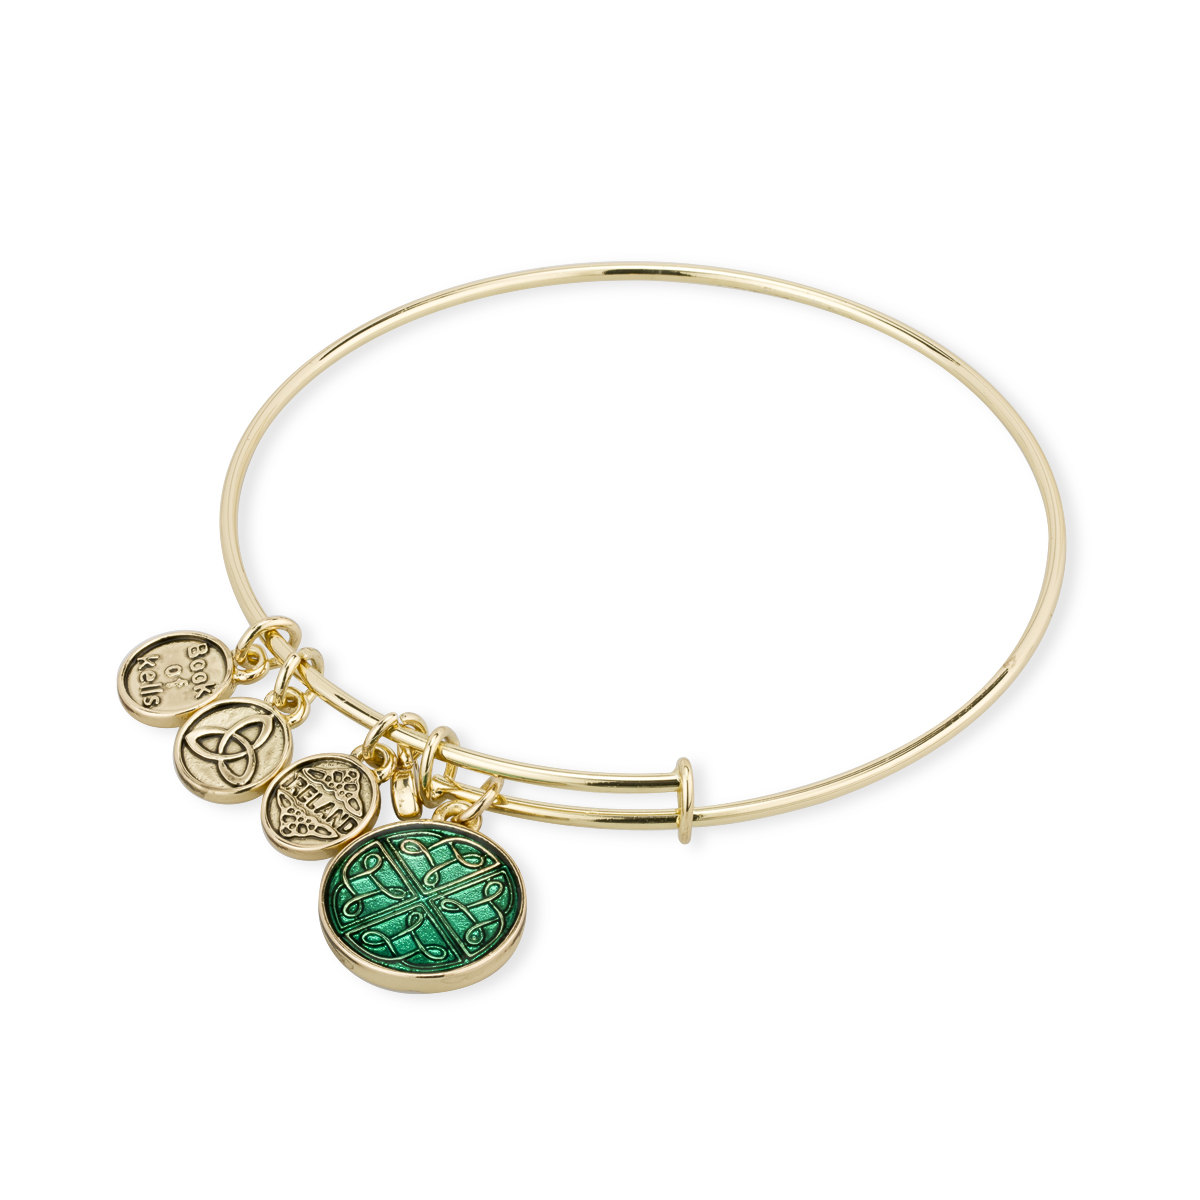 Product image for Irish Bracelet | Book of Kells Goldtone Trinity Knot Charm Celtic Bangle